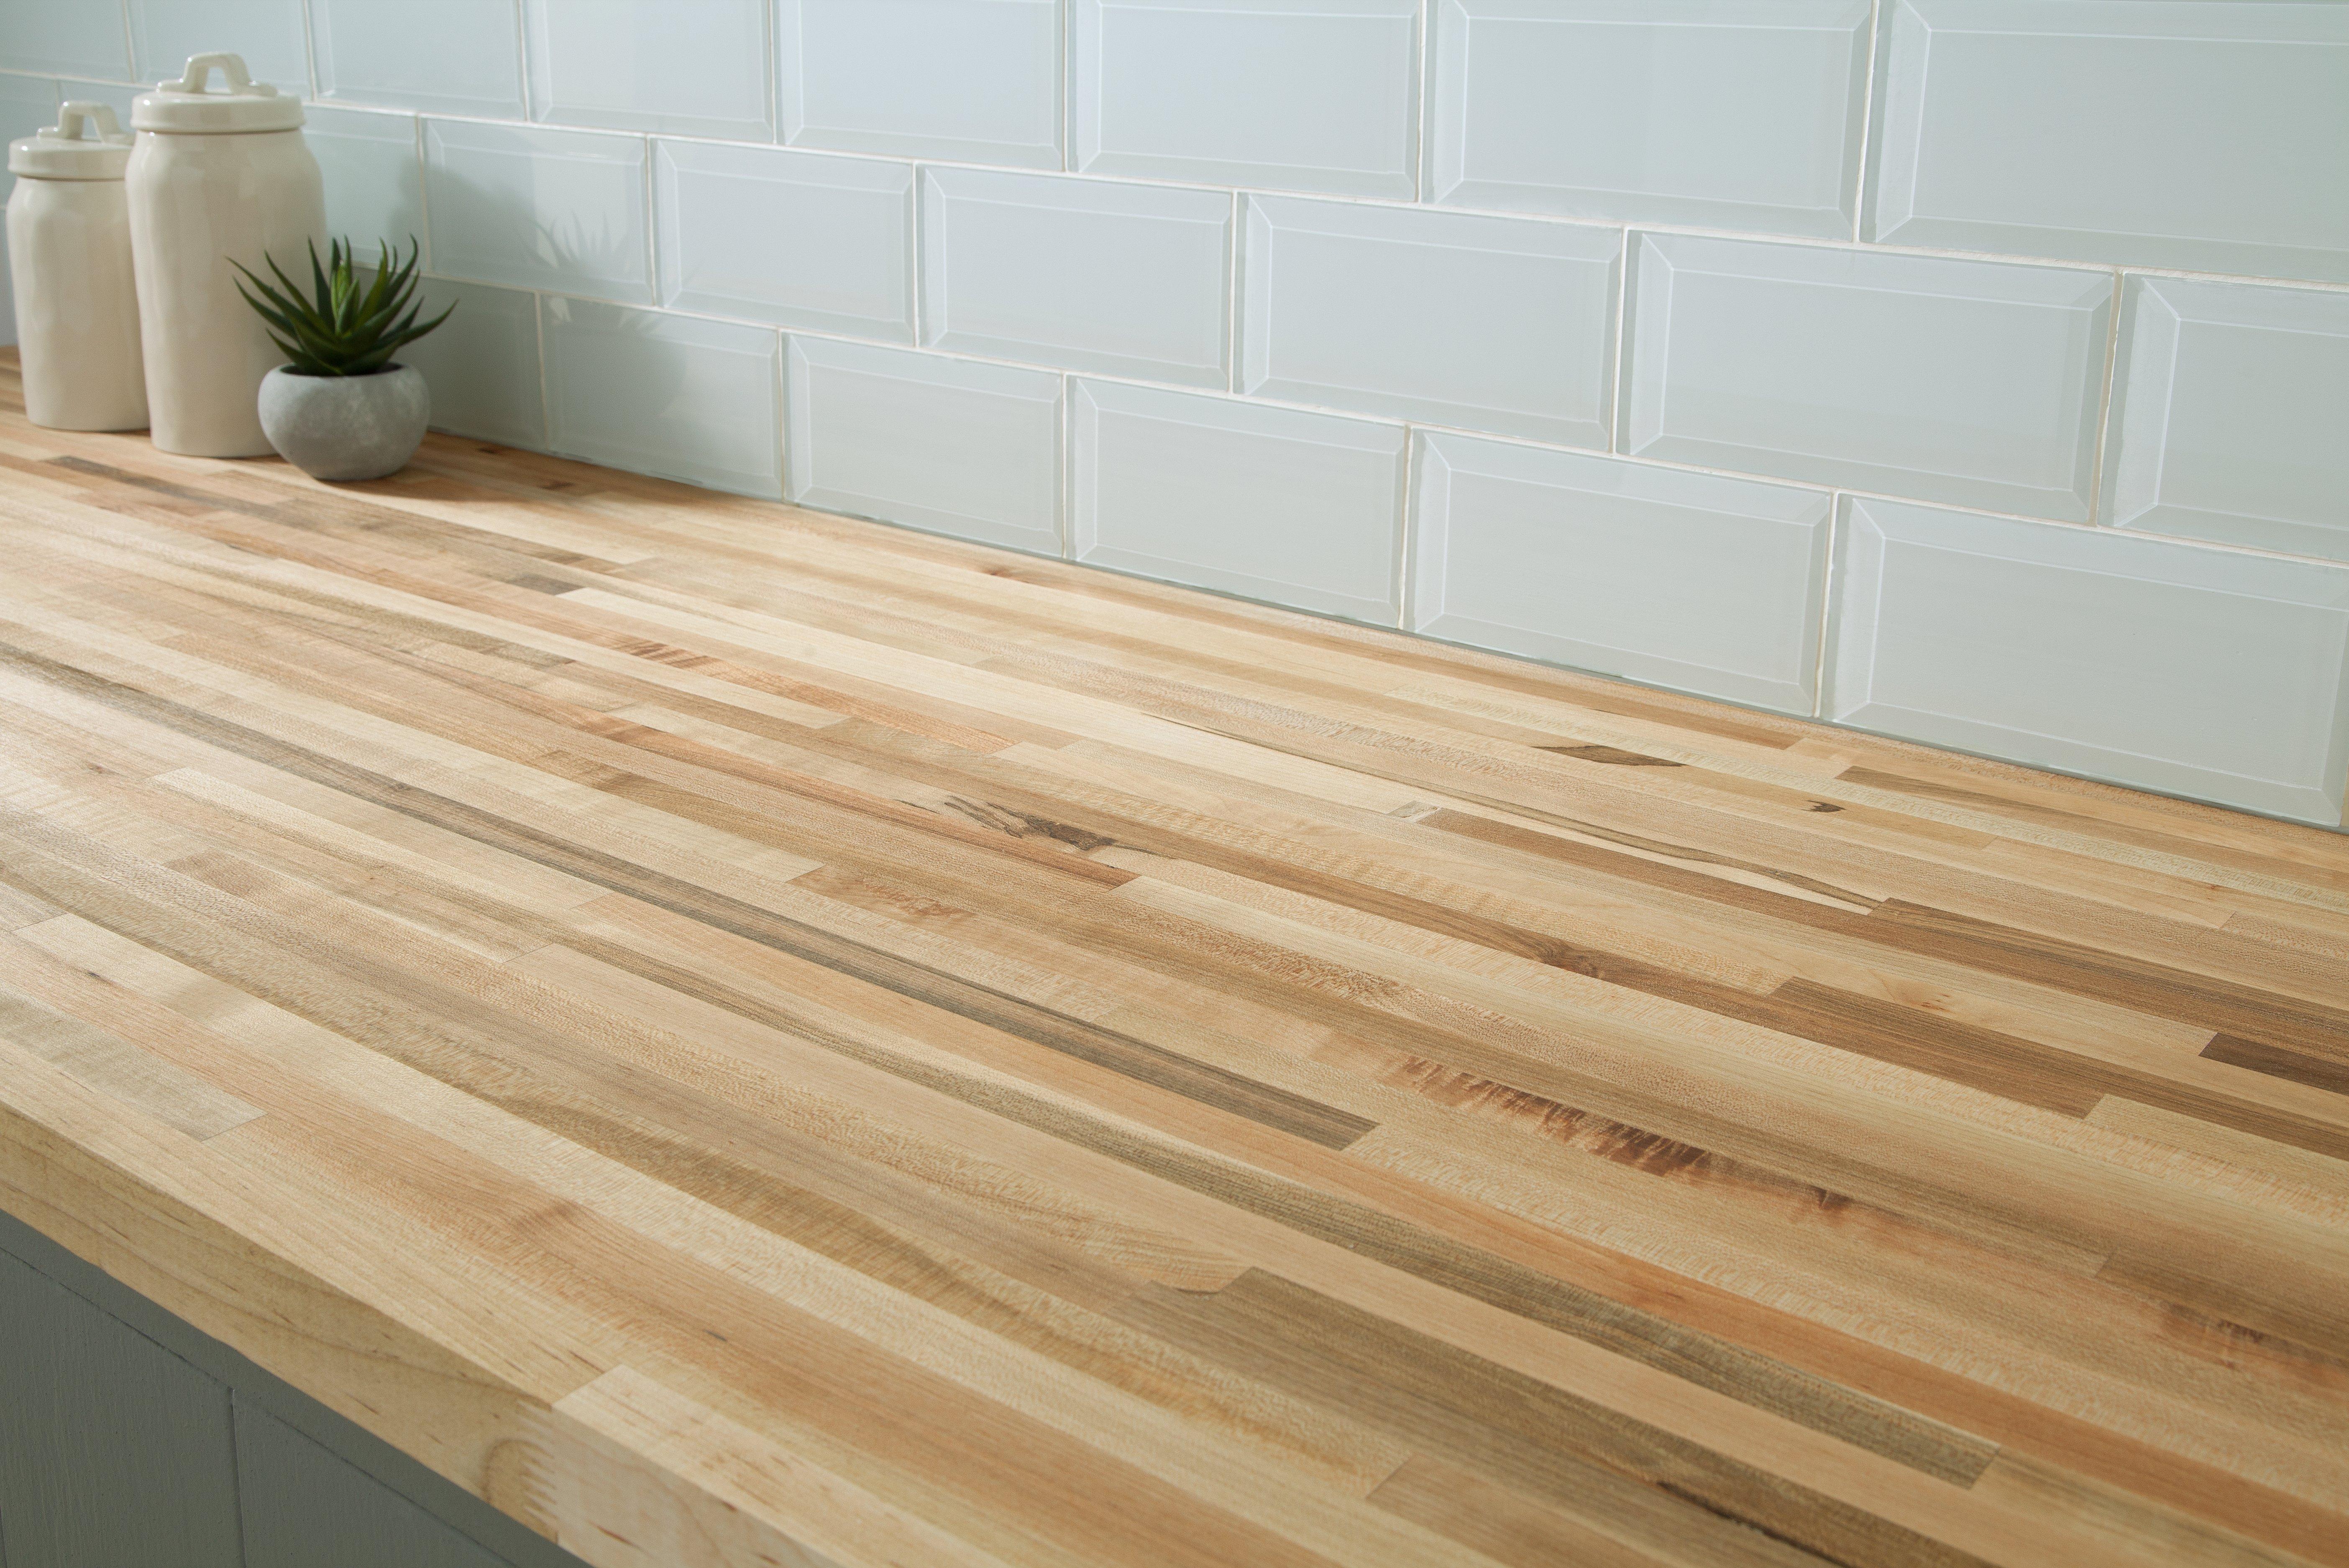 American Maple Butcher Block Countertop, Hardwood Flooring Countertop